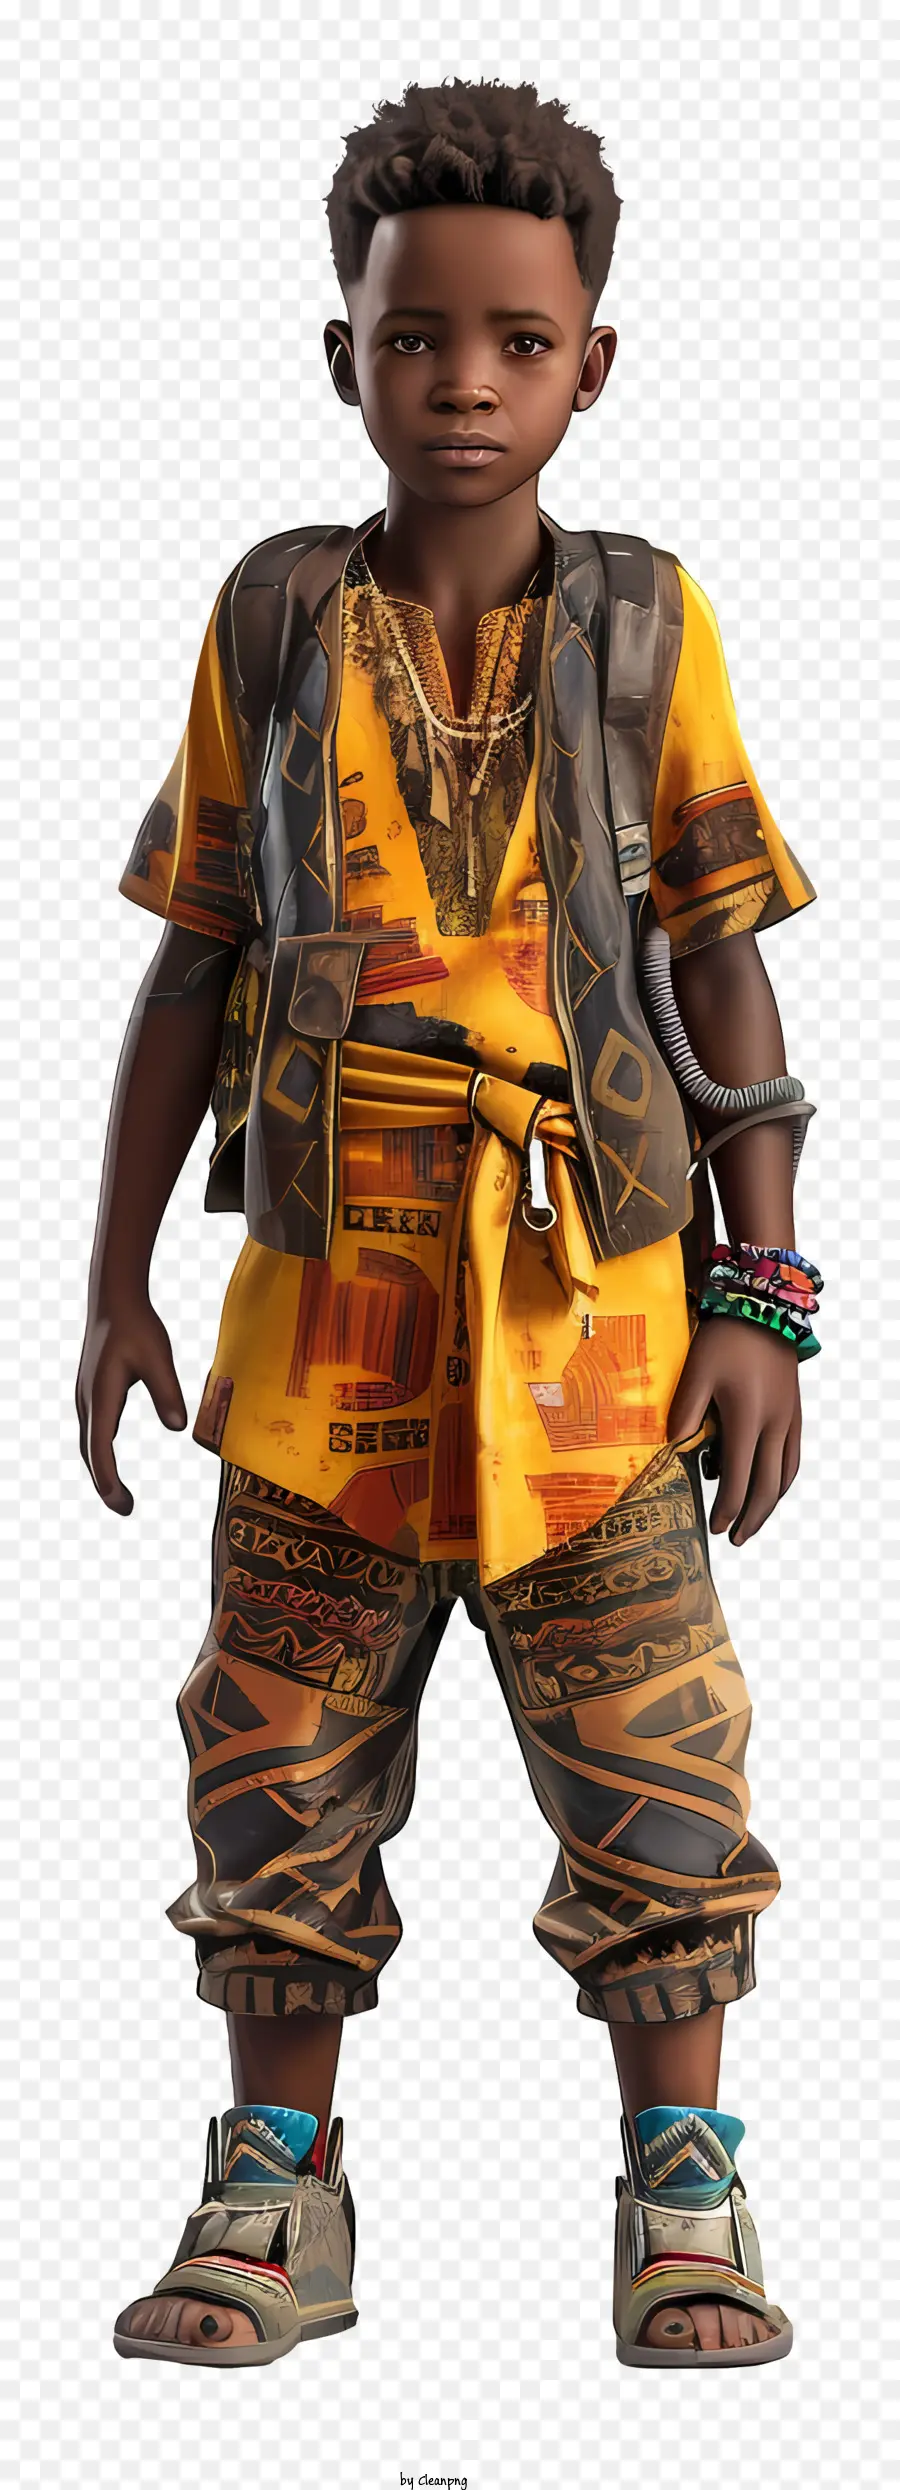 Ragazzo africano Fashi - Persona in abbigliamento africano luminoso si pone all'esterno